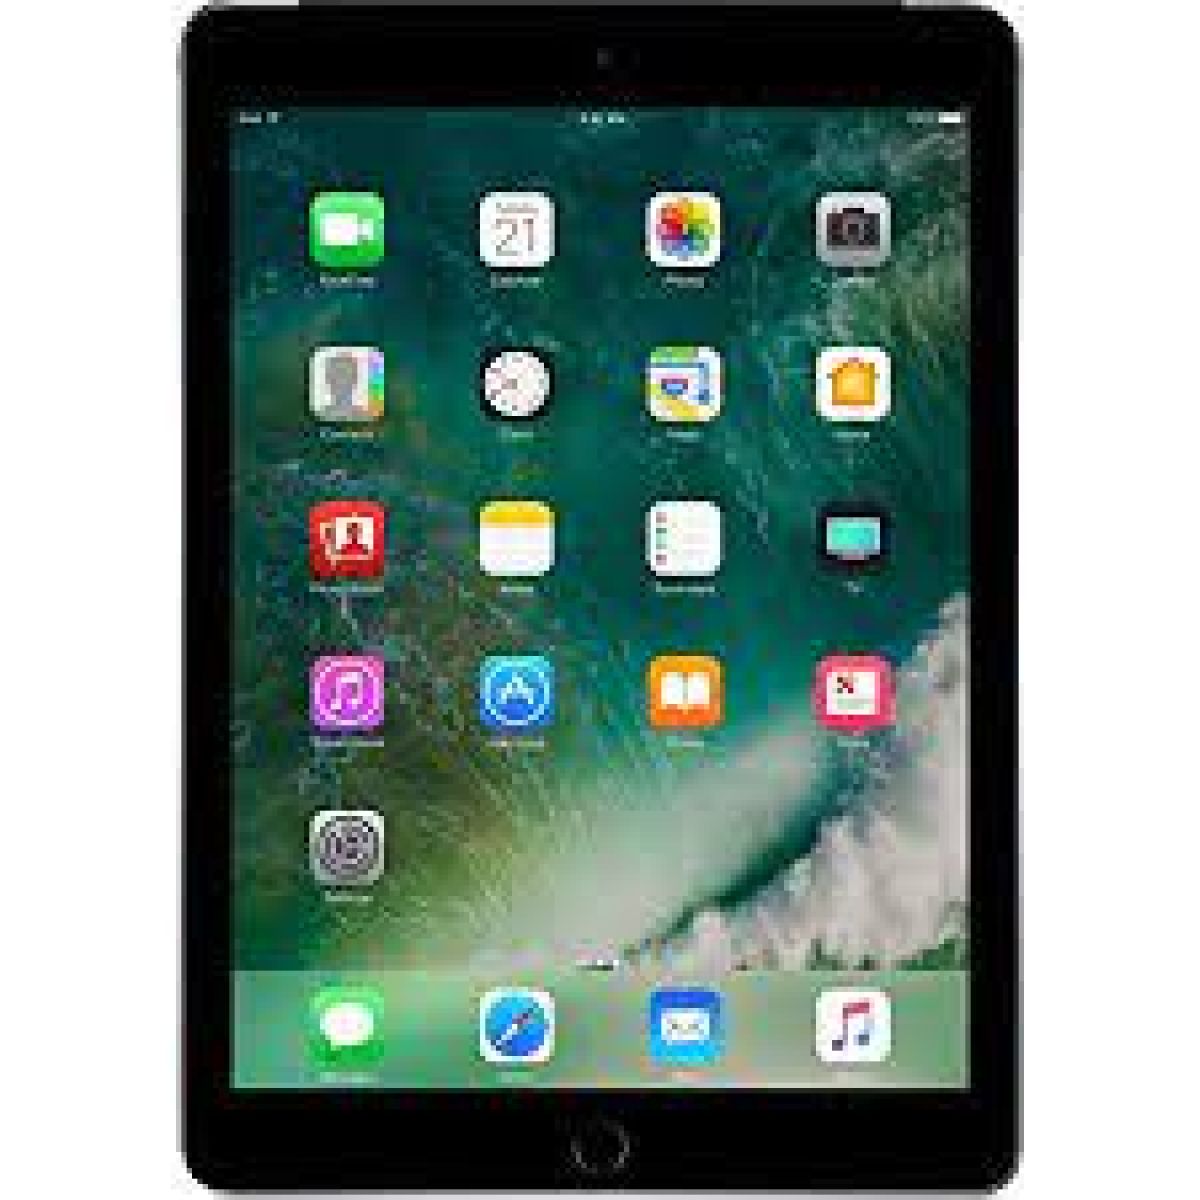 Apple iPad (5e génération) A1822 WiFi 128 Go Gris sidéral